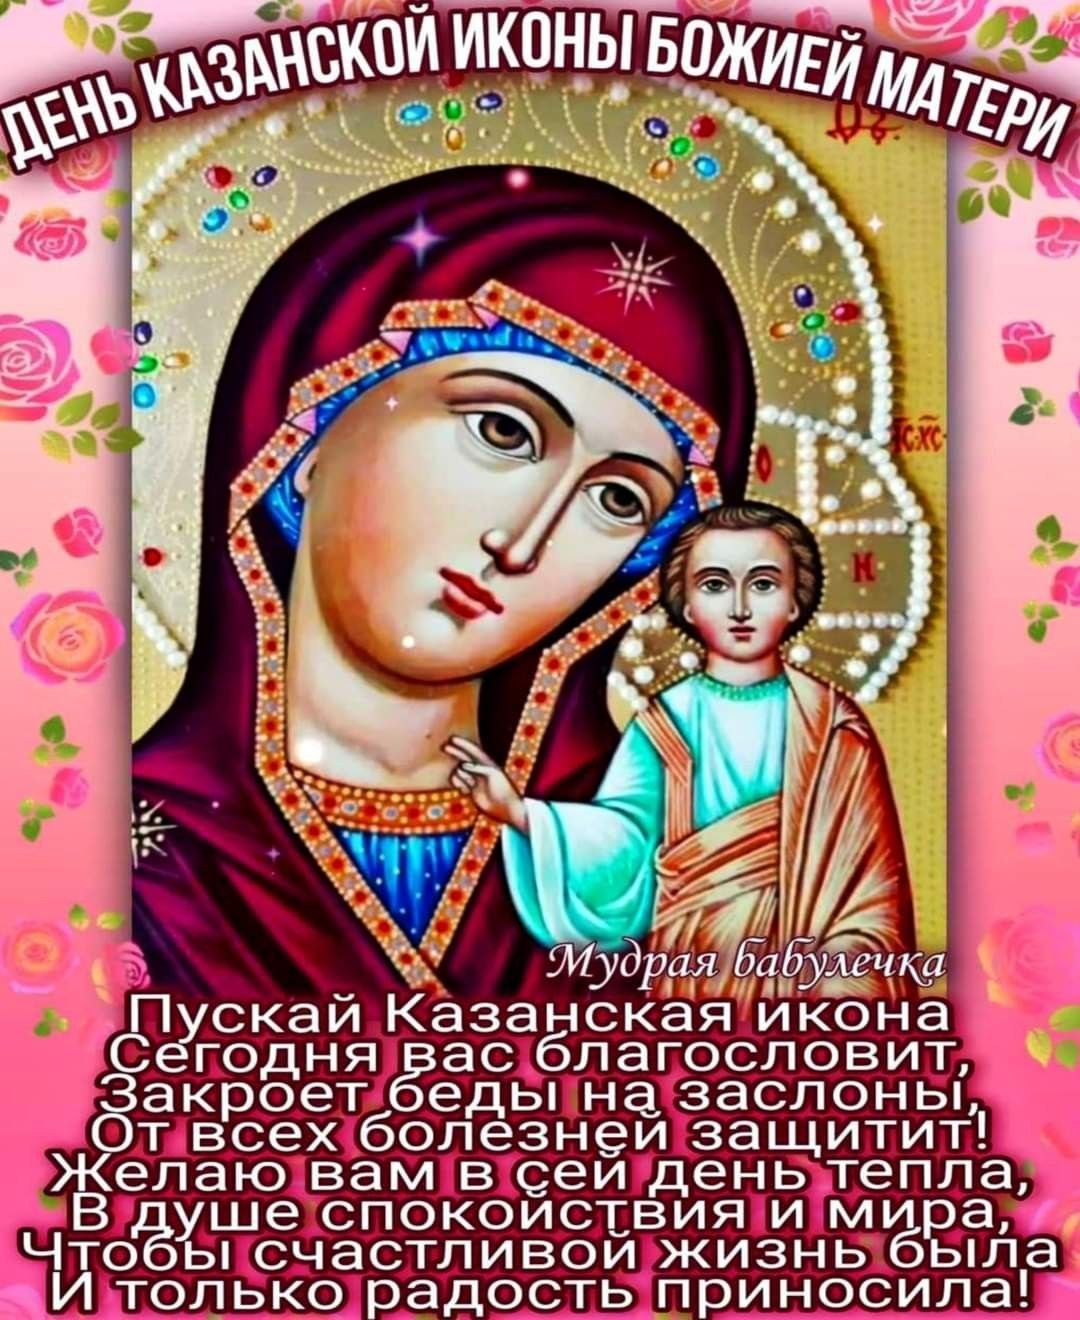 Фото иконы Казанской Божьей Матери: разнообразие красивых изображений